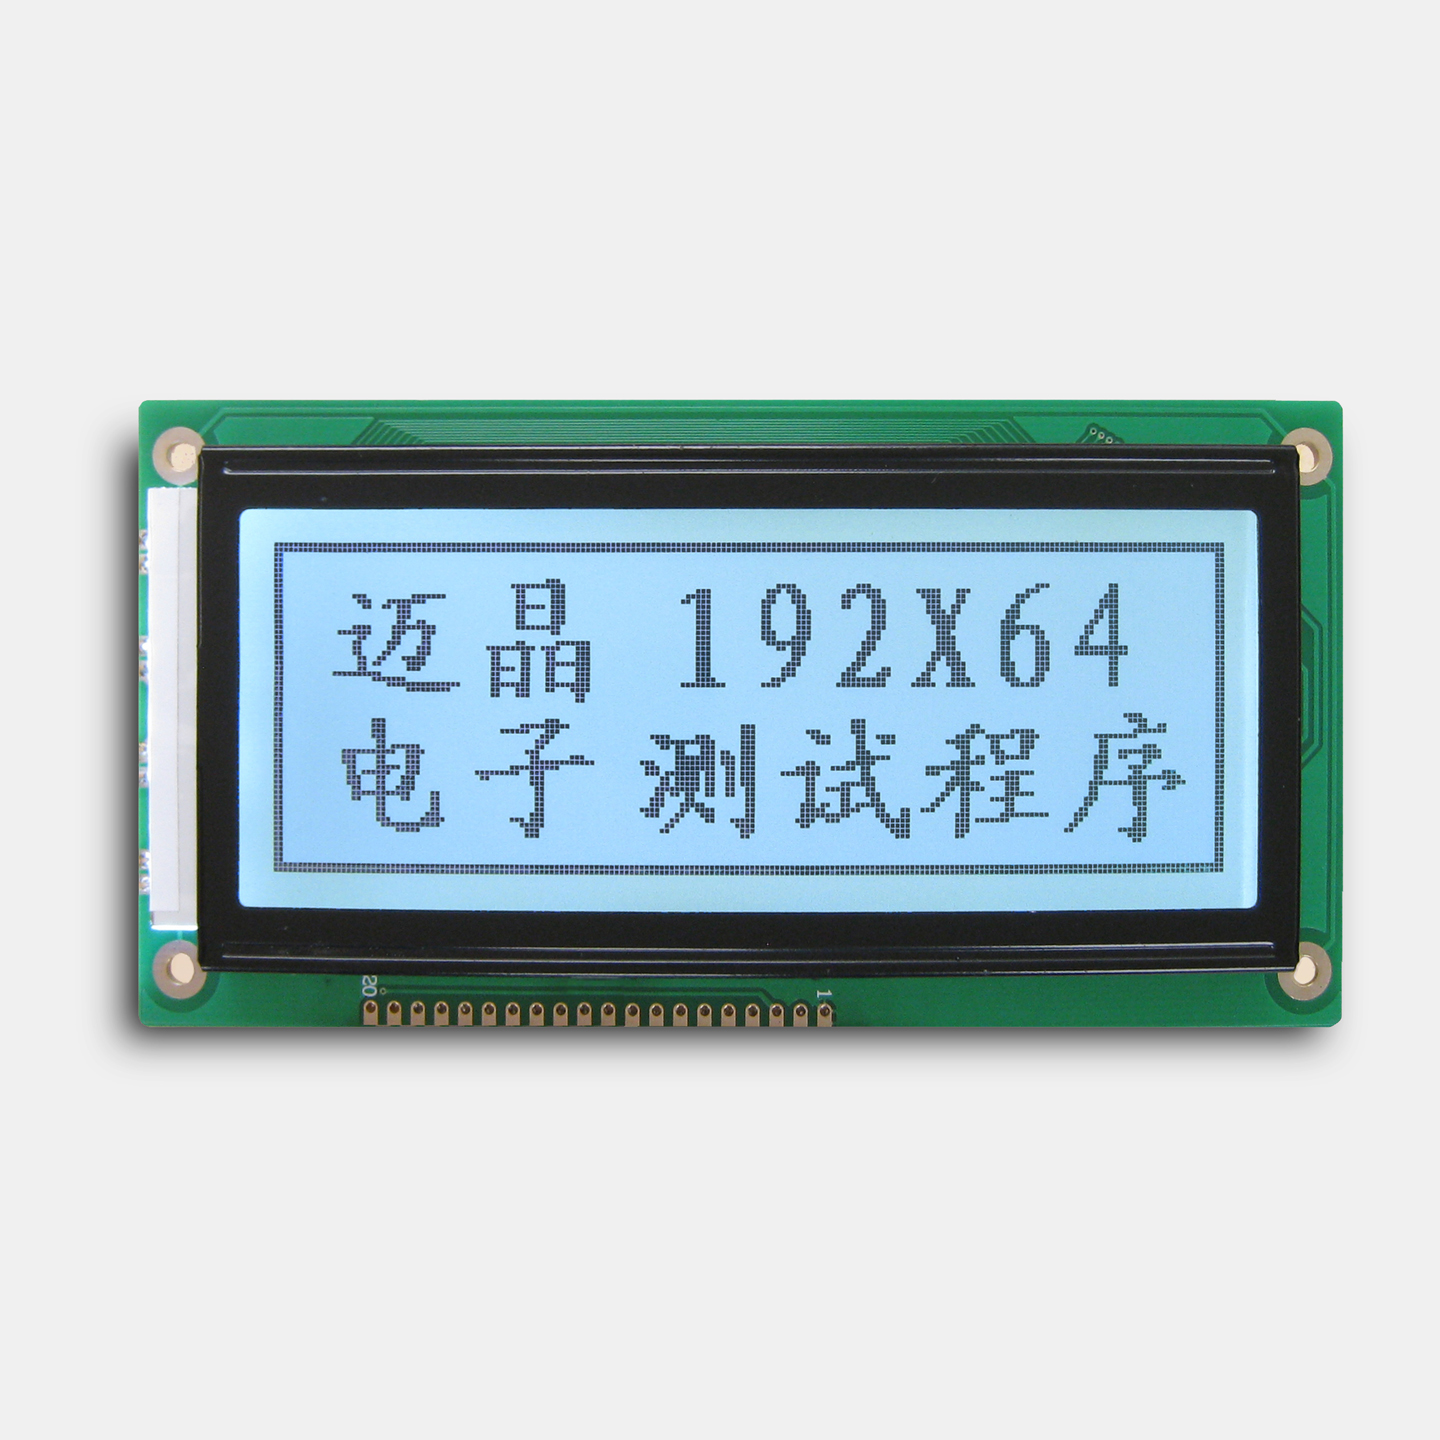 MJ19264ALCD液晶显示器，深圳市迈晶电子科技有限公司